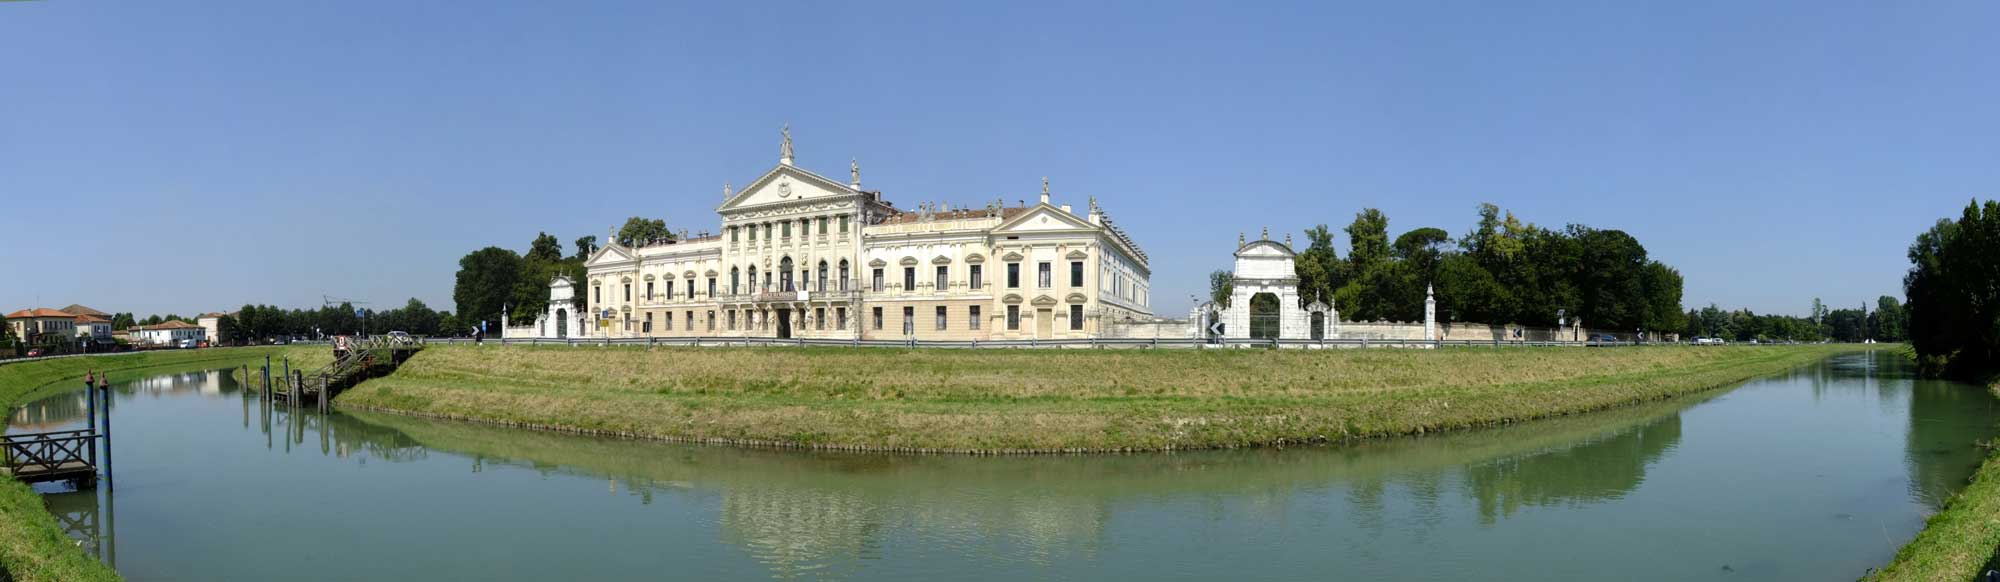 Villa Pisani - Albergo e ristorante vicino a Padova - Antica Locanda Alla Rampa